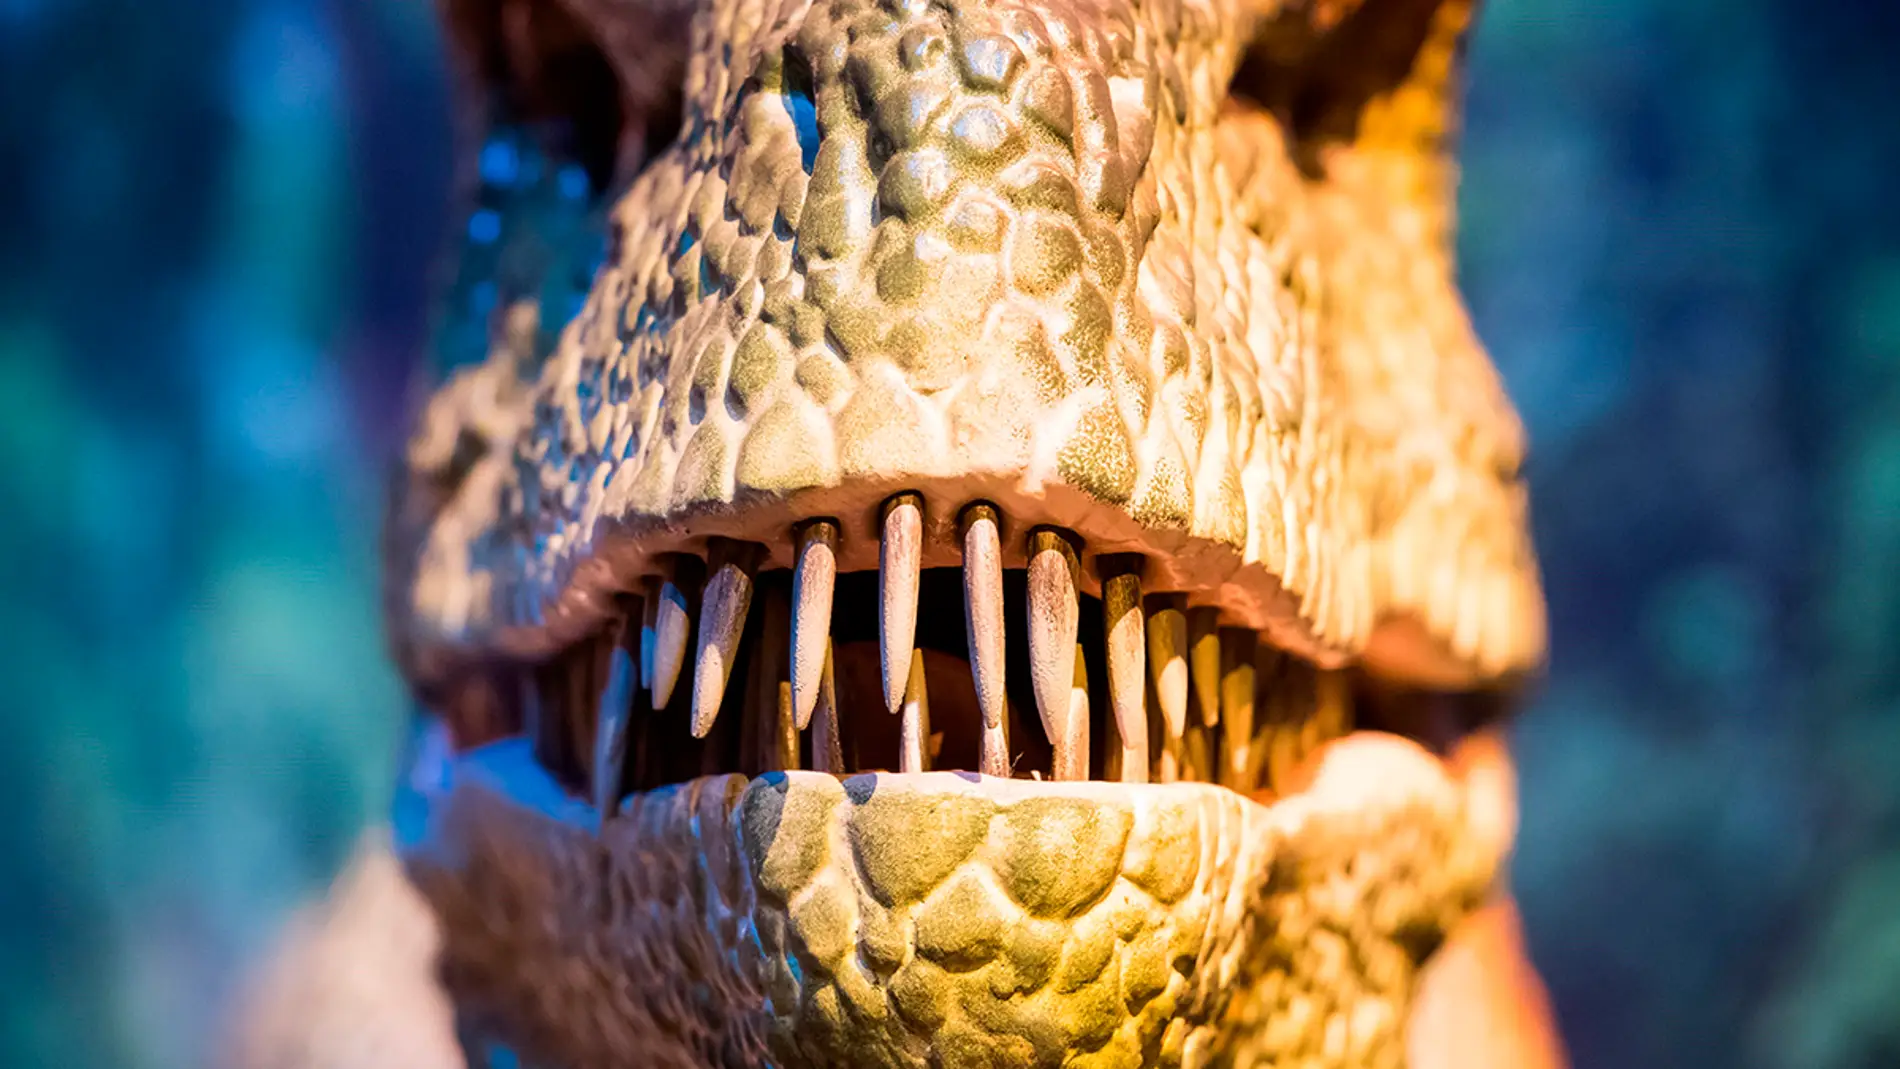 Exposición de dinosaurios en Múnich (29-03-2018)